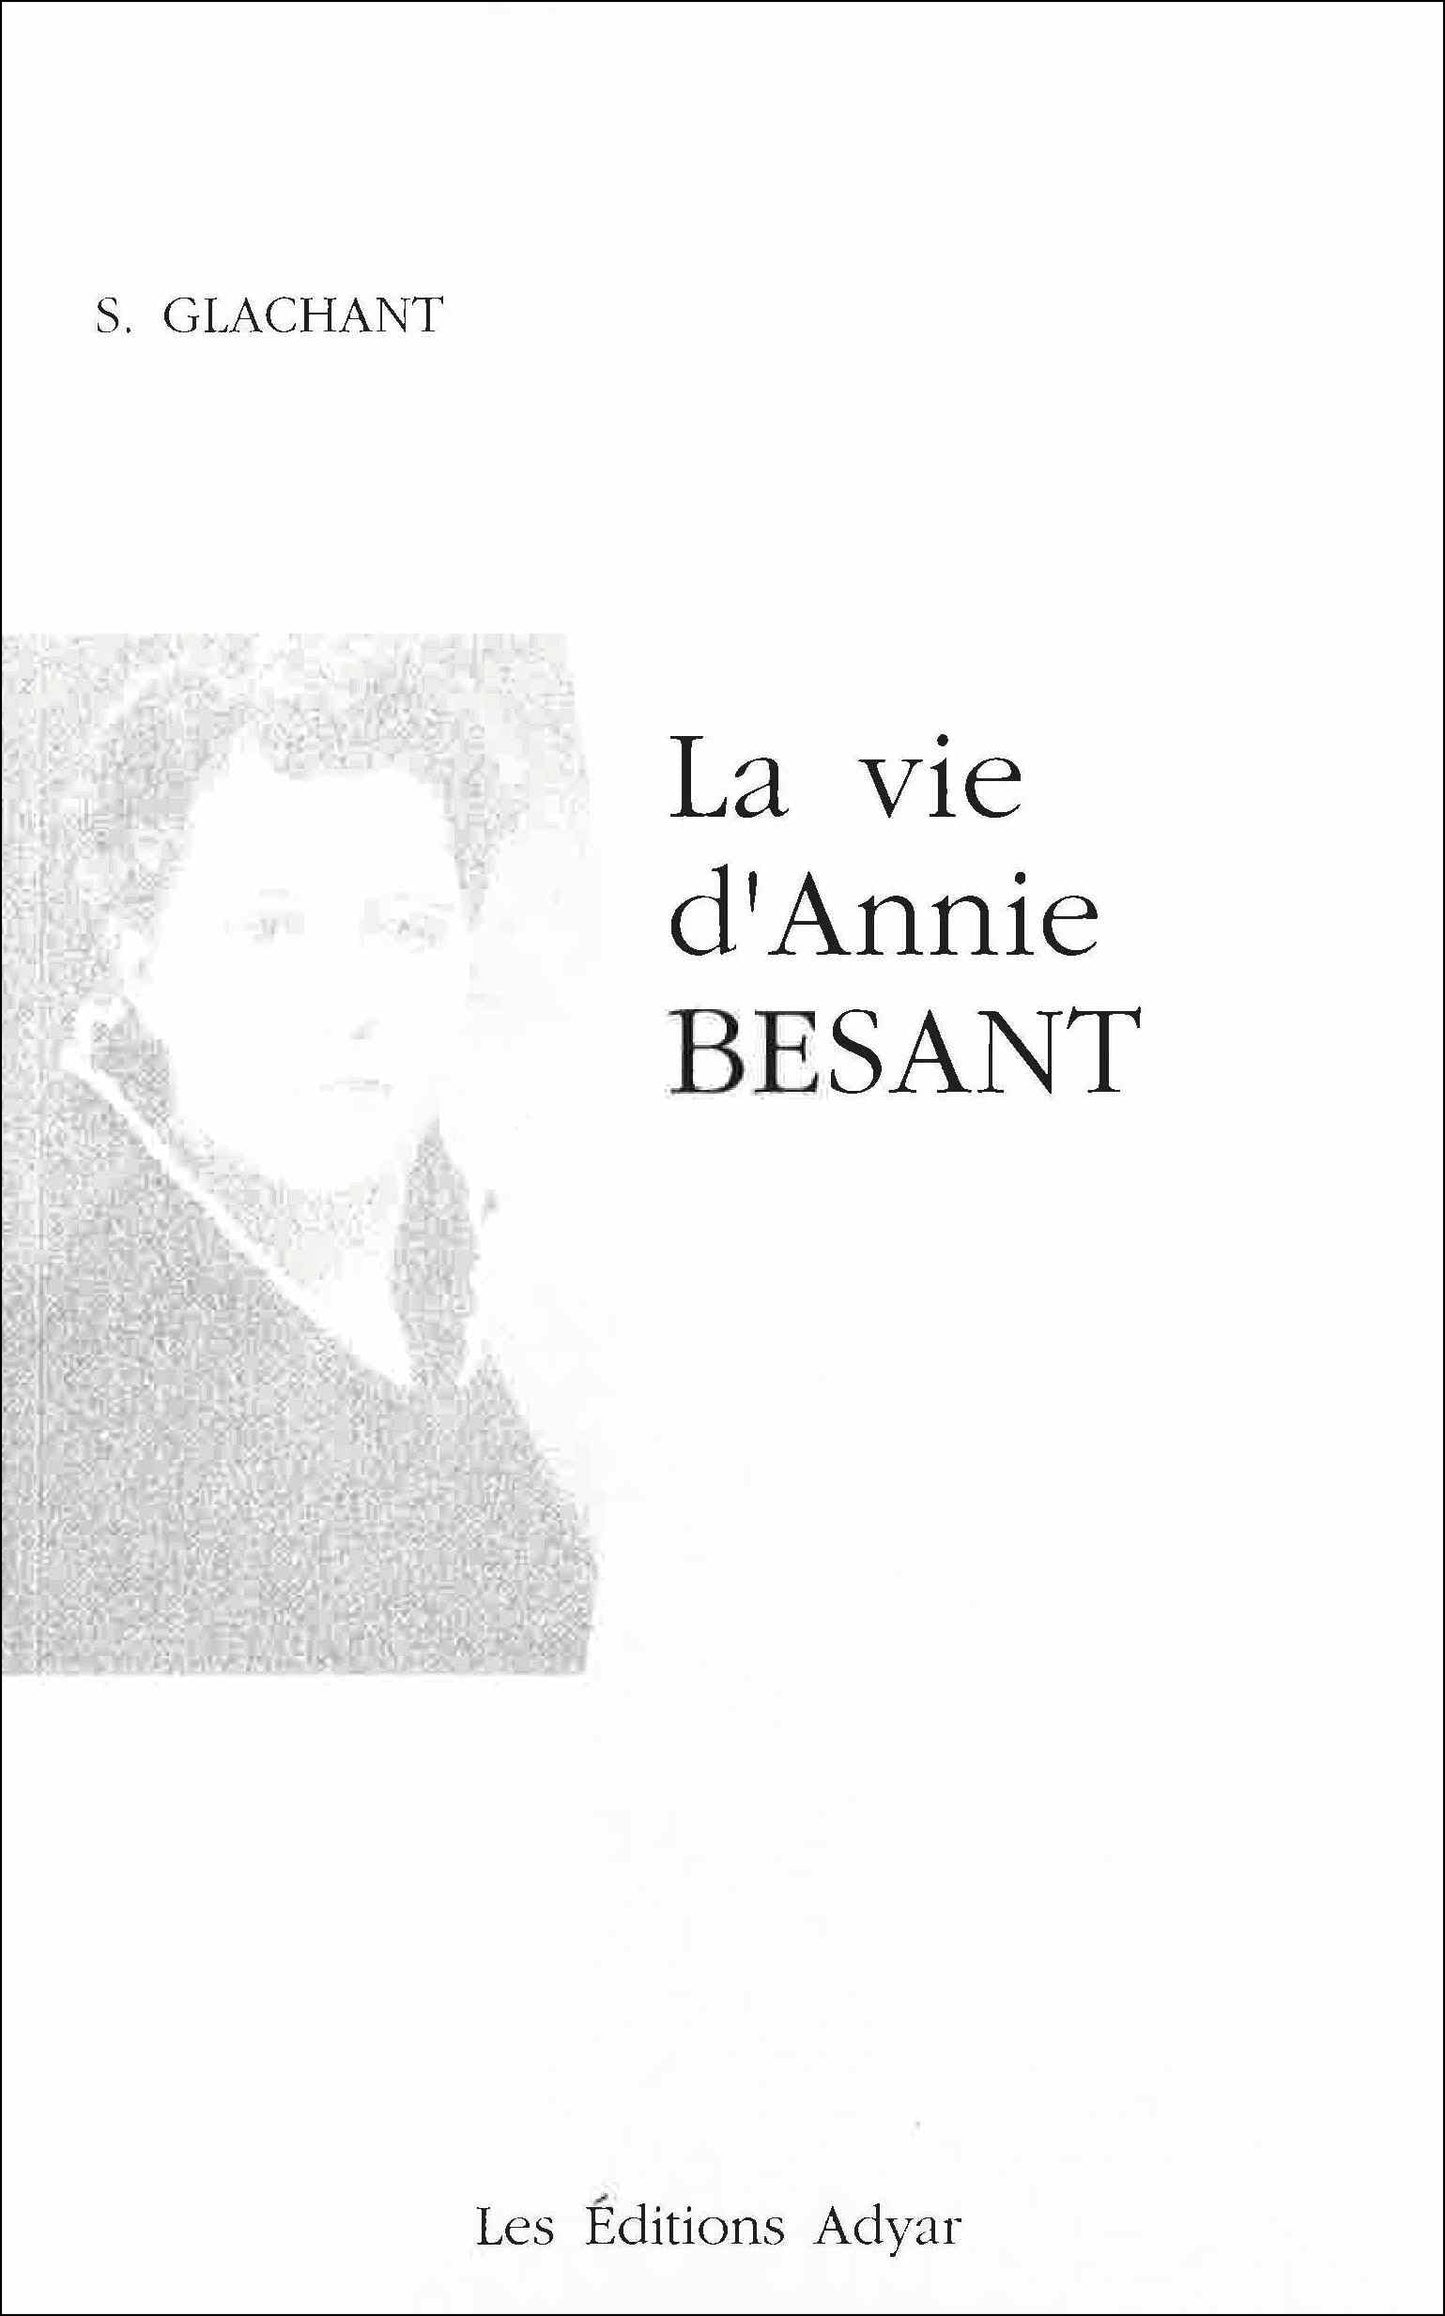 Occasion - La Vie d’Annie Besant